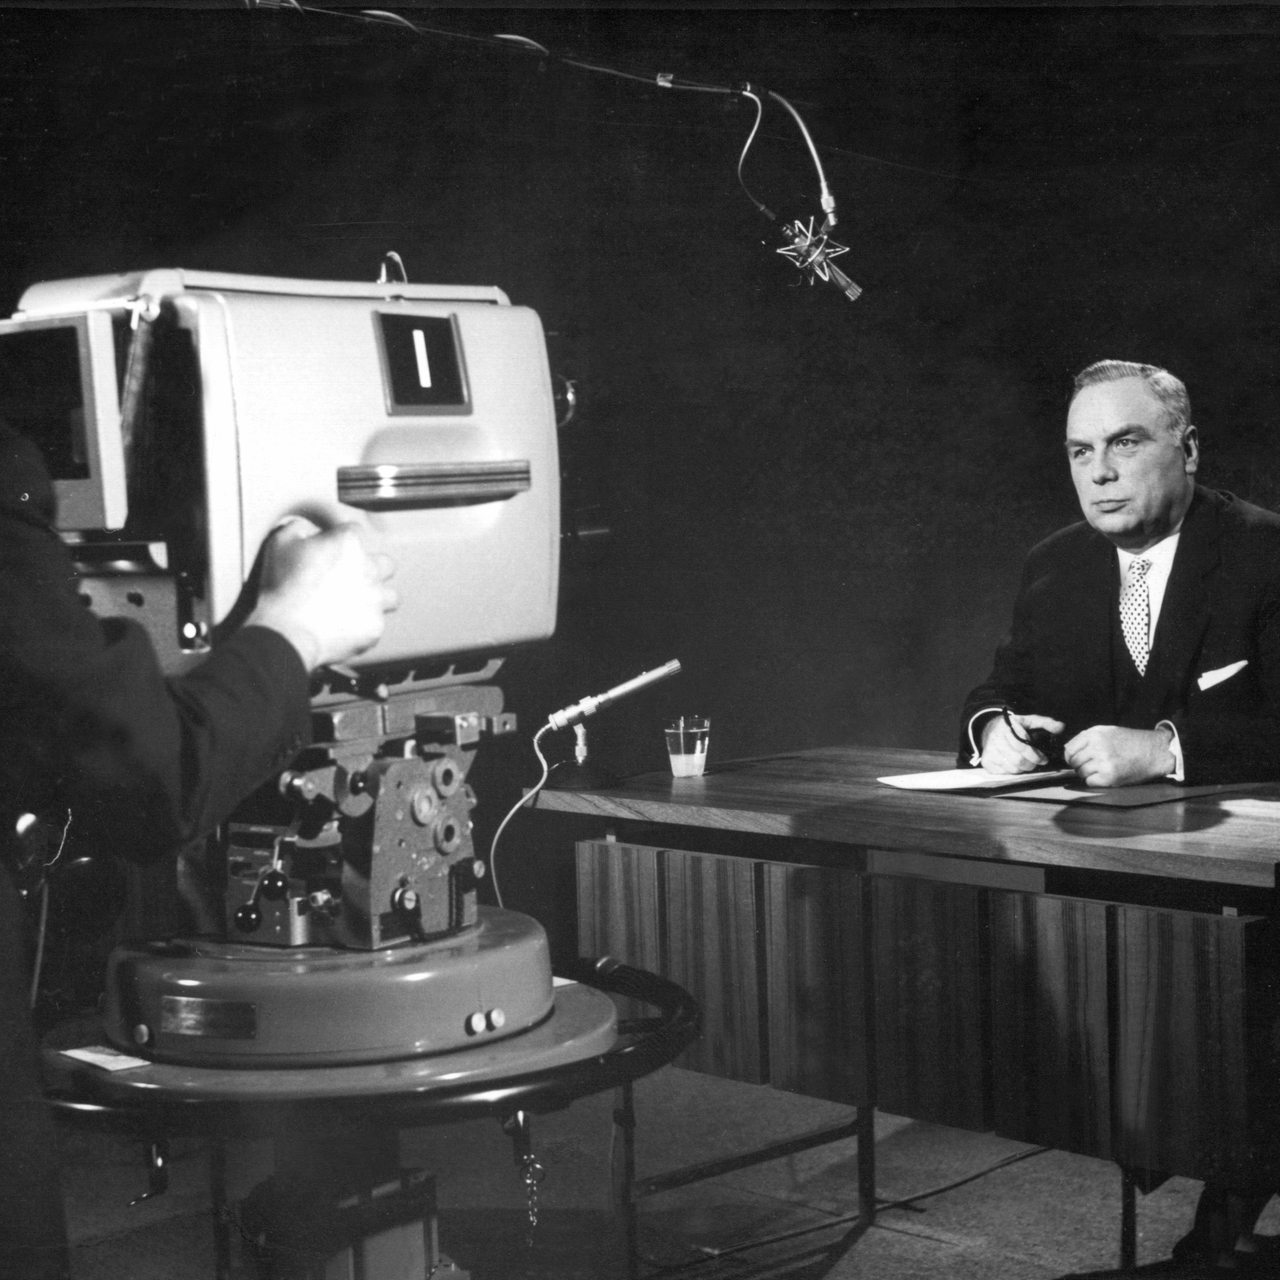 Der Intendant Professor Karl Holzamer während seiner Ansprache zur beginnenden Ausstrahlung. Das Zweite Deutsche Fernsehen (ZDF) in Mainz begann am 1. April 1963 um 19 Uhr 30 mit der Ausstrahlung.